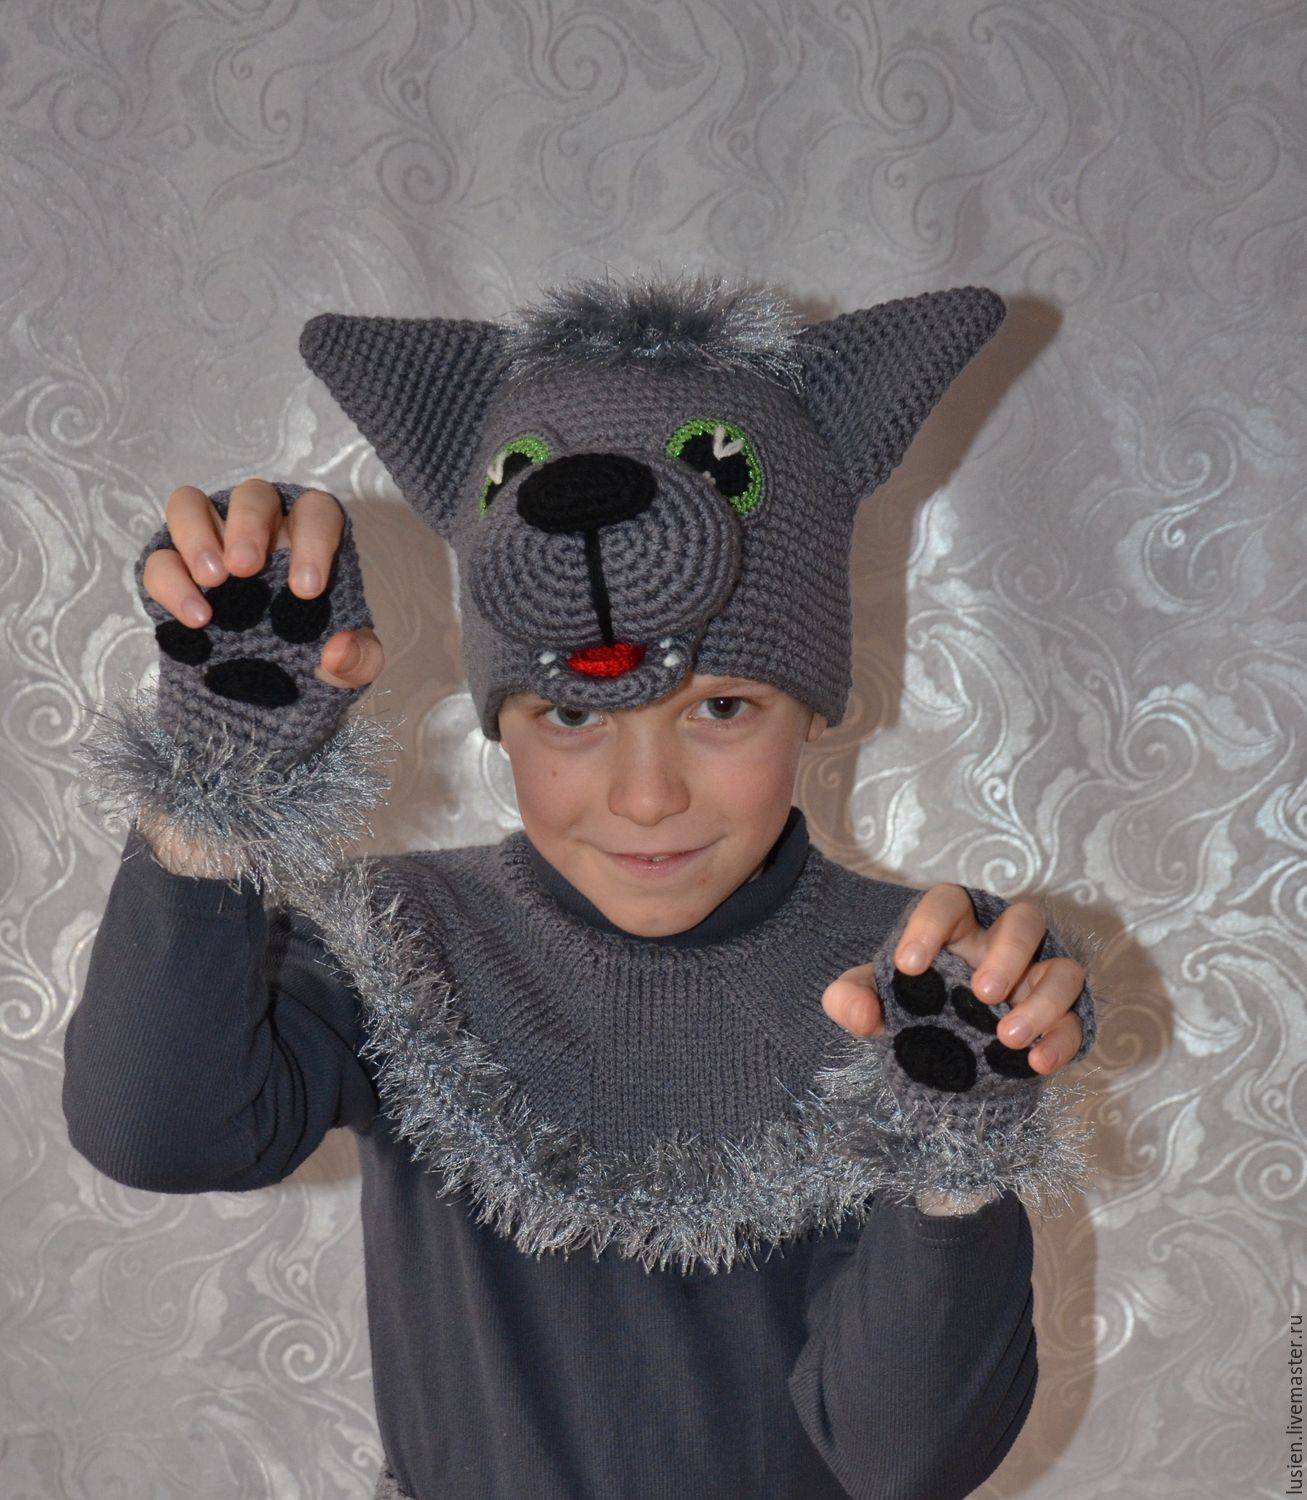 Как сшить забавный костюм волка своими руками для мальчика - мастер-класс с фото |